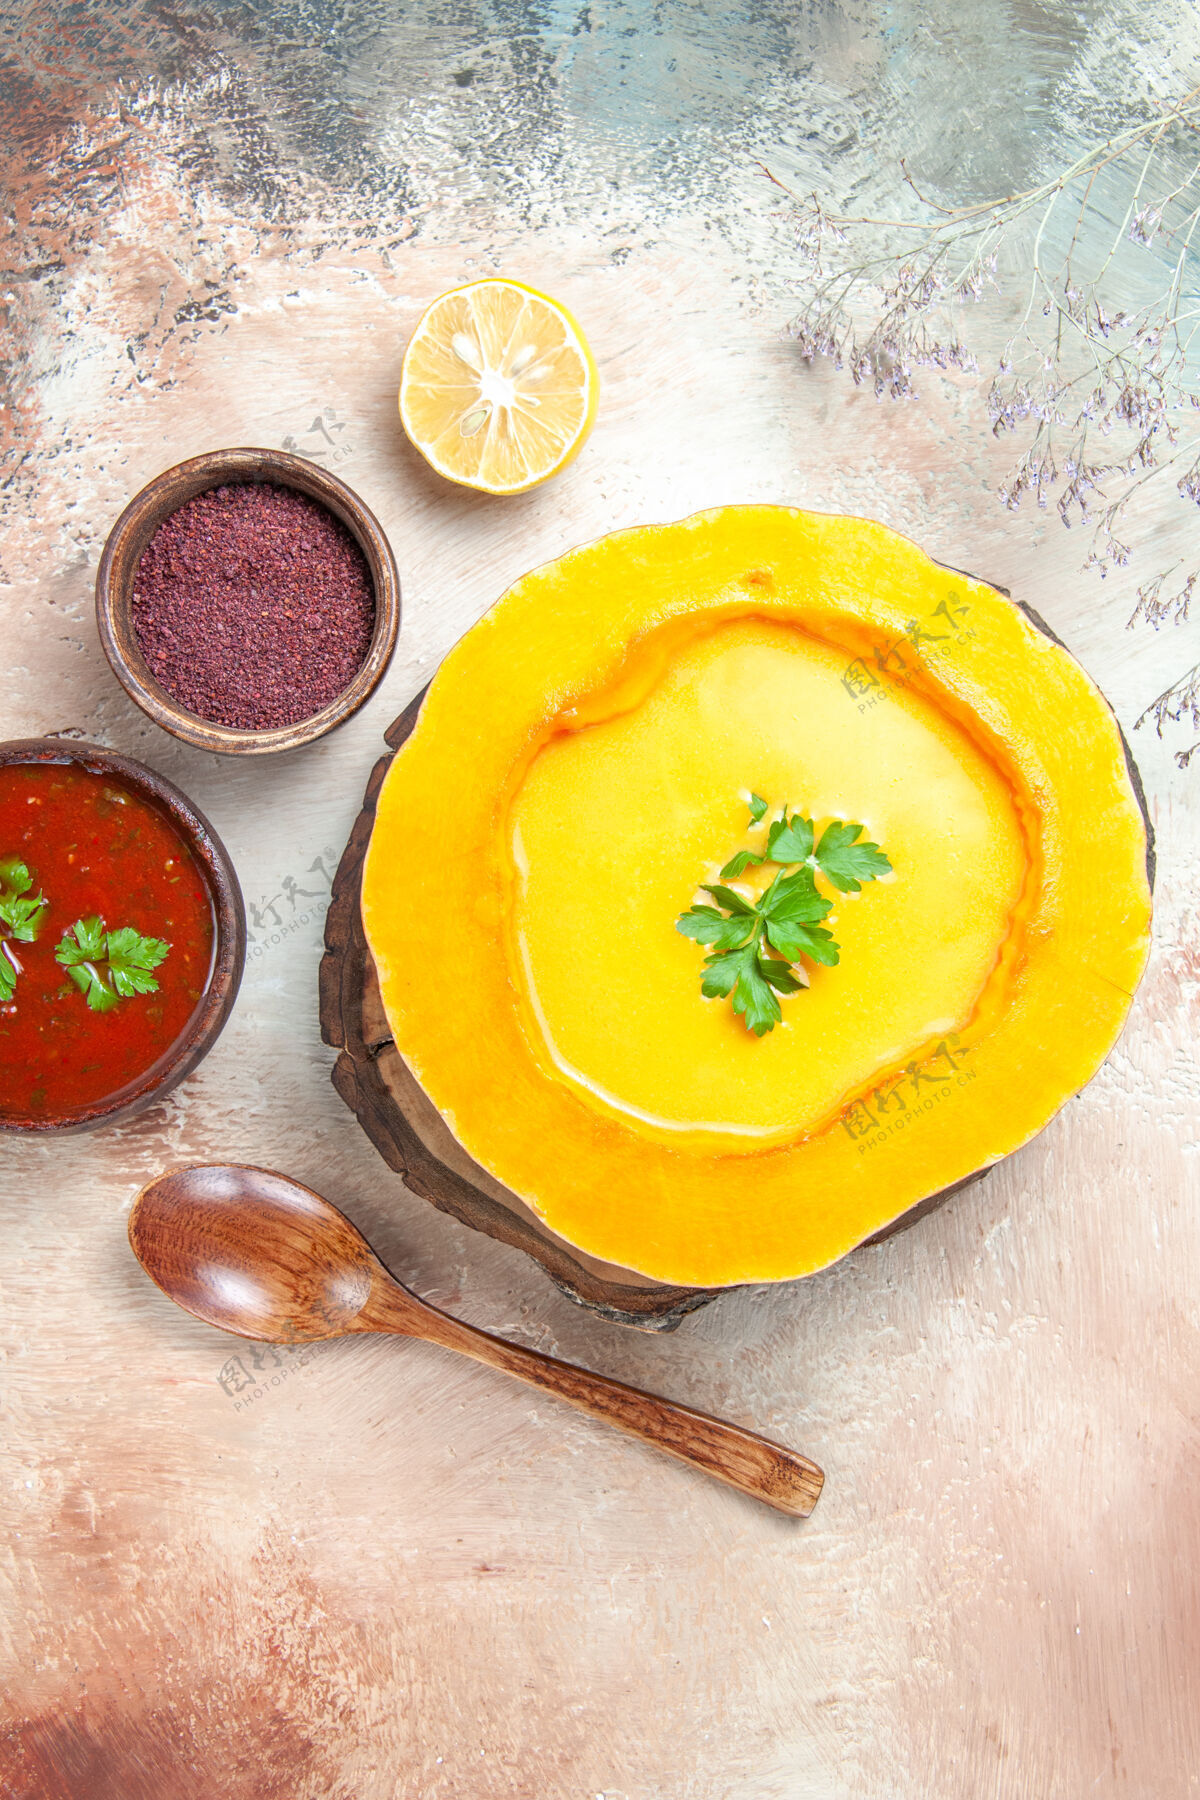 美食汤匙俯视图柠檬南瓜汤板上酱汁香料健康膳食盘子